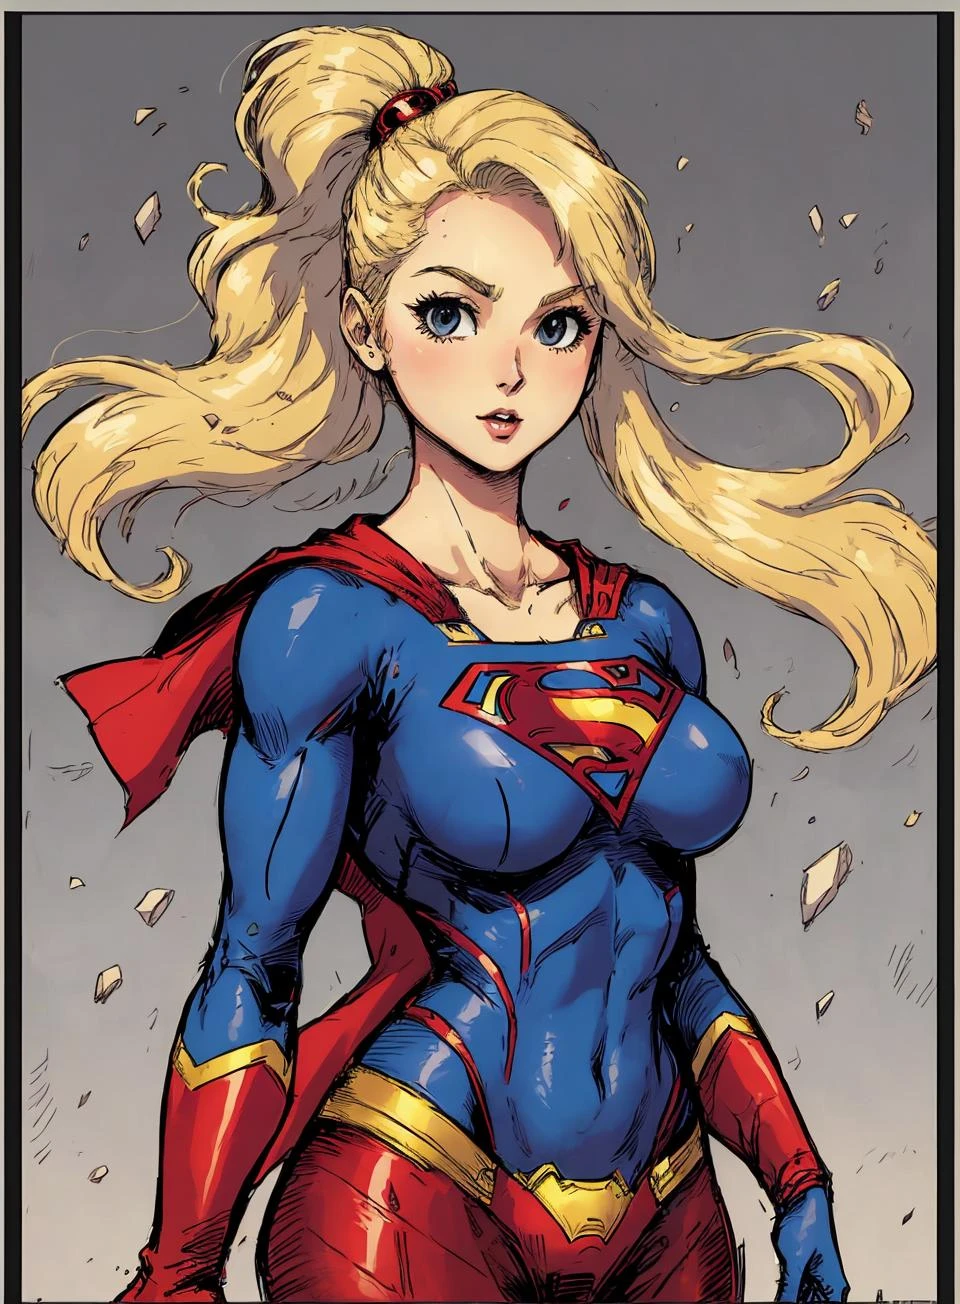 dessiner une supergirl,  en caisson,  bordure grise,
cheveux blond,   joli costume de super-héros, Gros seins,  cheveux longs,  seulement,
